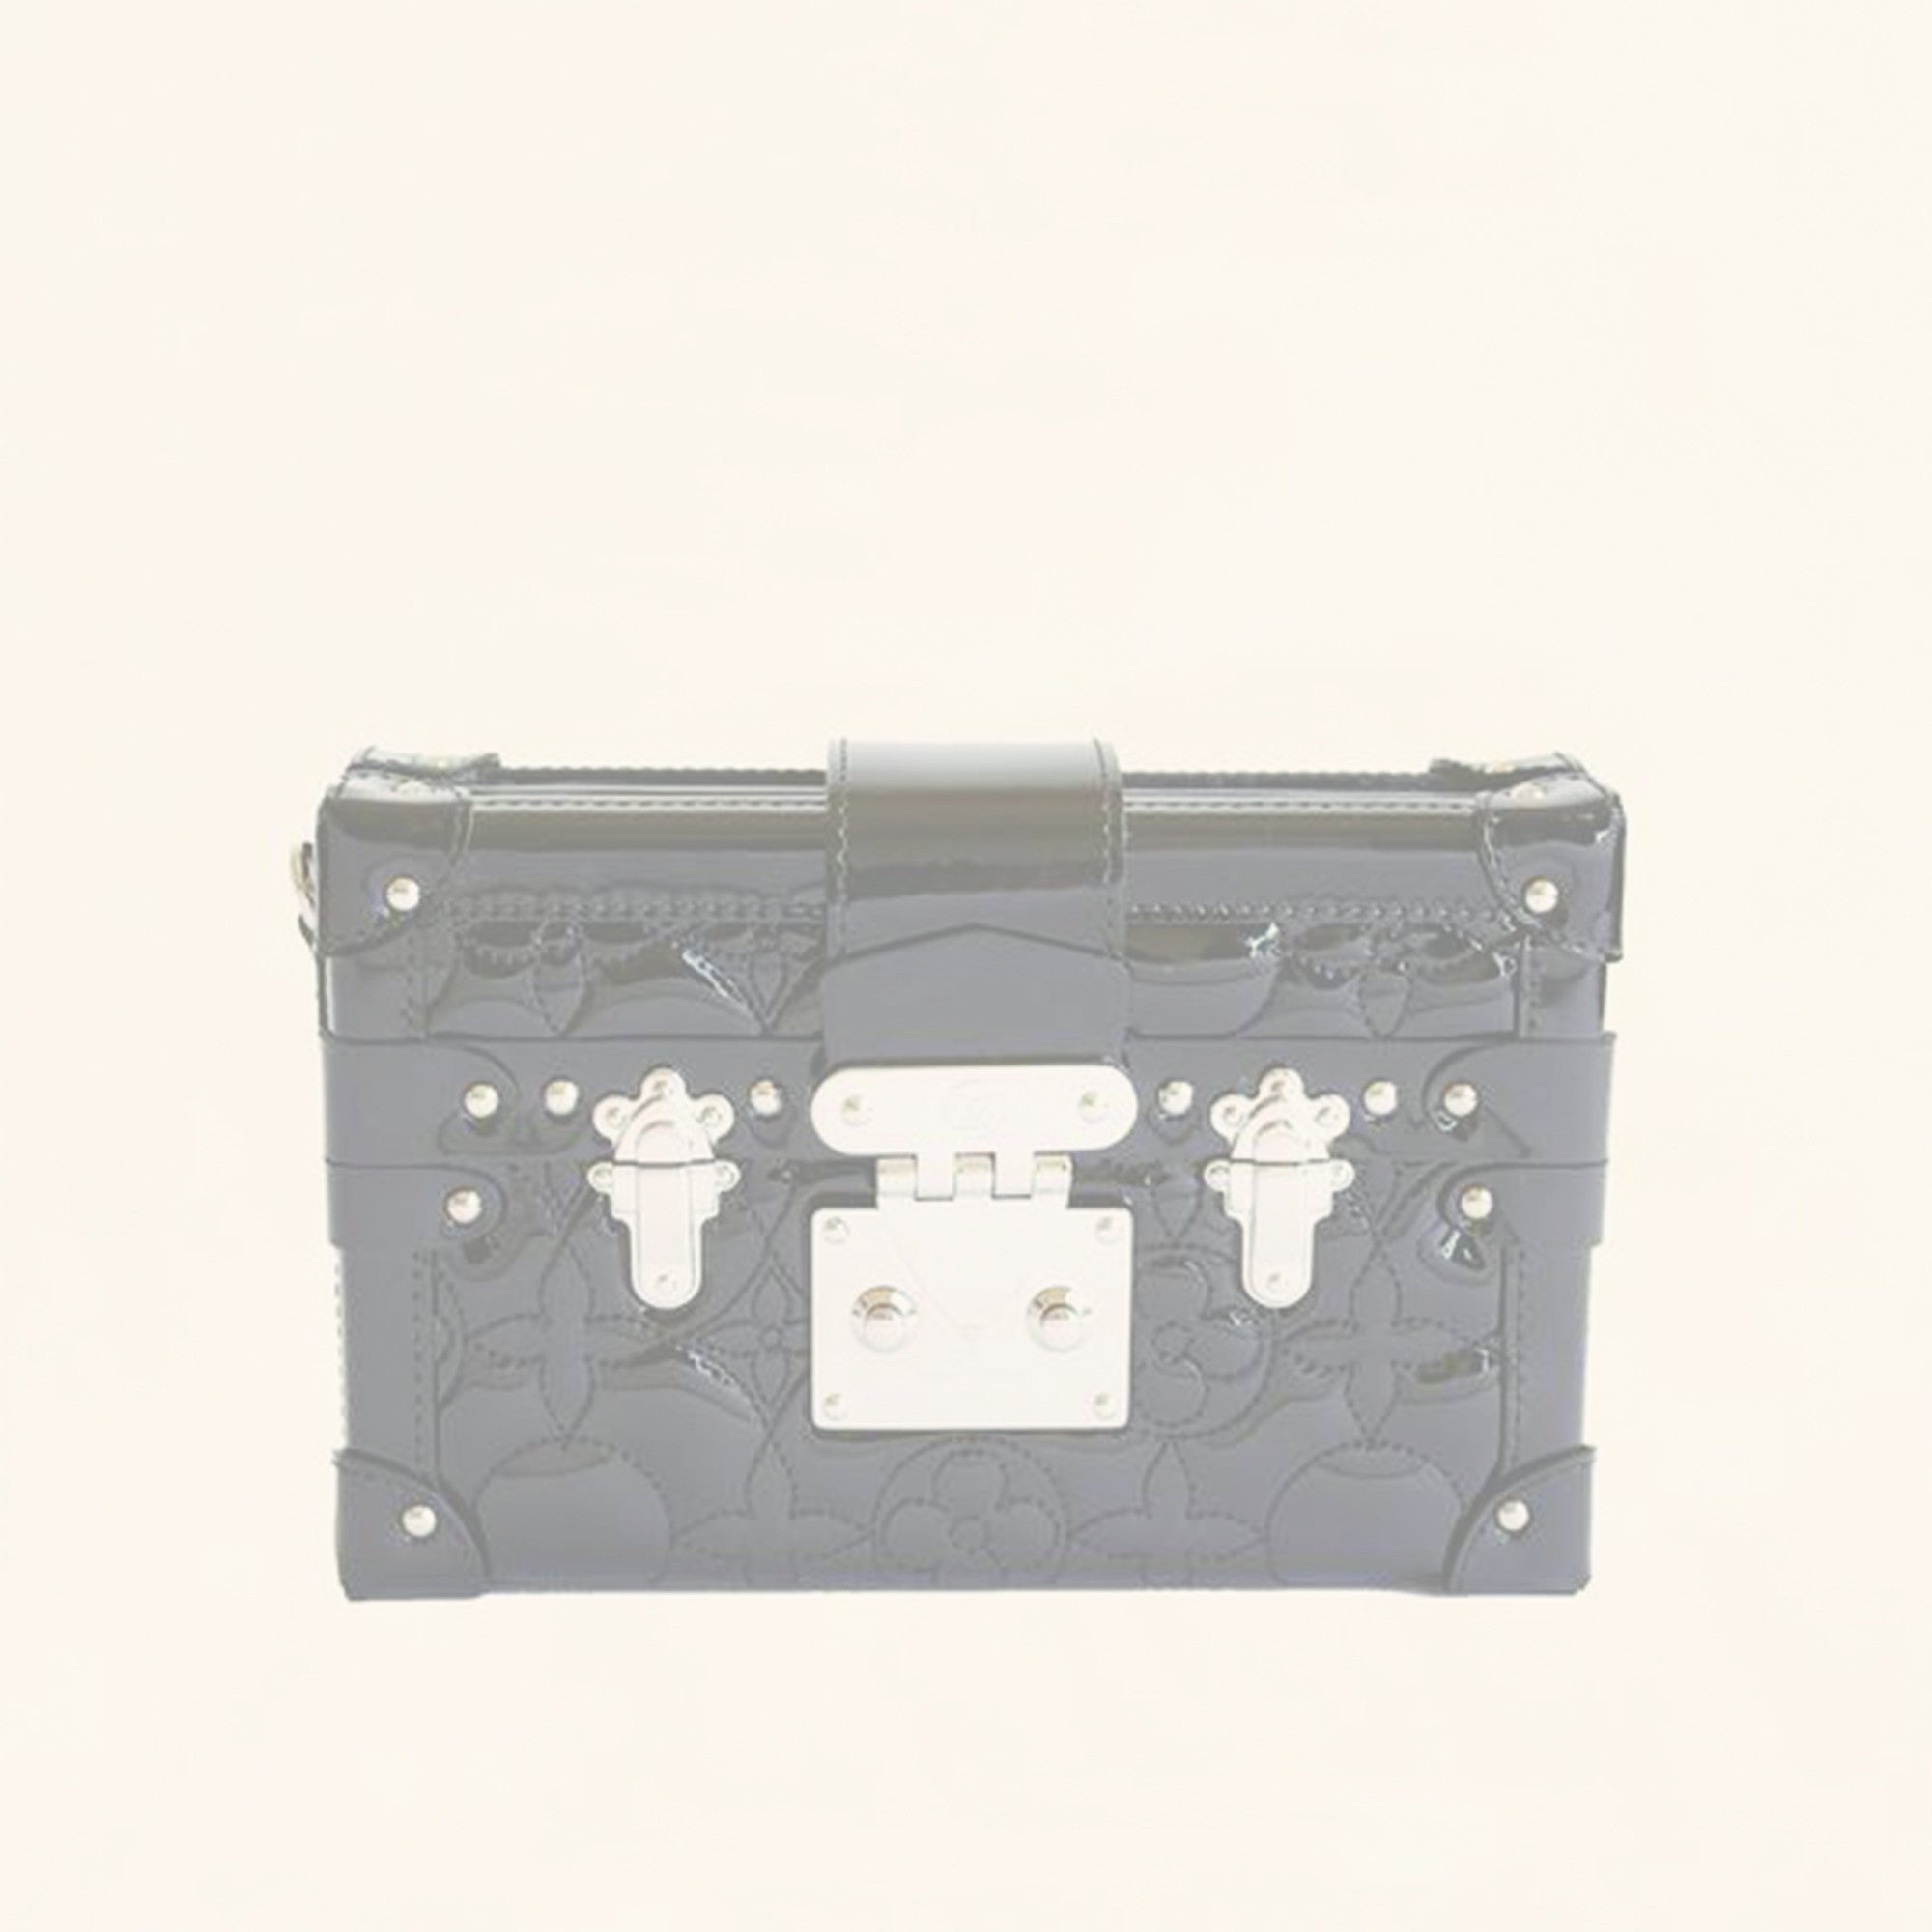 Louis Vuitton | Monogram Petite Boite Chapeau | M43514 by The-Collectory